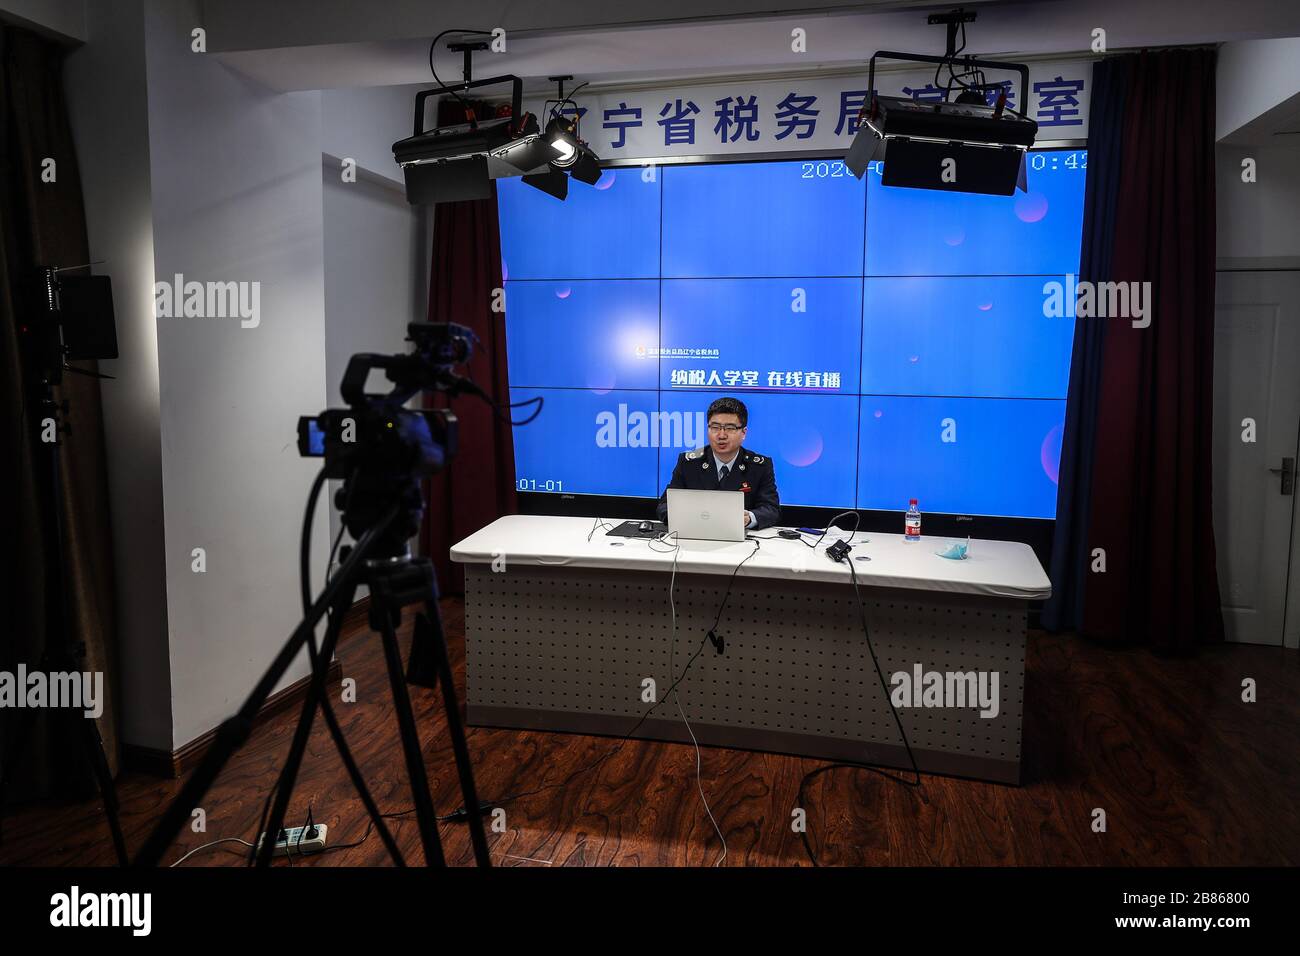 Shenyang, Chinas Provinz Liaoning. März 2020. Ein Mitarbeiter führt die Steuerpolitik durch Live-Streaming in Shenyang ein, der Hauptstadt der nordostchinesischen Provinz Liaoning, am 20. März 2020. Liaoning Provincial Tax Service begann vor kurzem, Beratungsdienste für steuerliche Anreize während der Epidemie in Form von Live-Streaming bereitzustellen. Credit: Pan Yulong/Xinhua/Alamy Live News Stockfoto